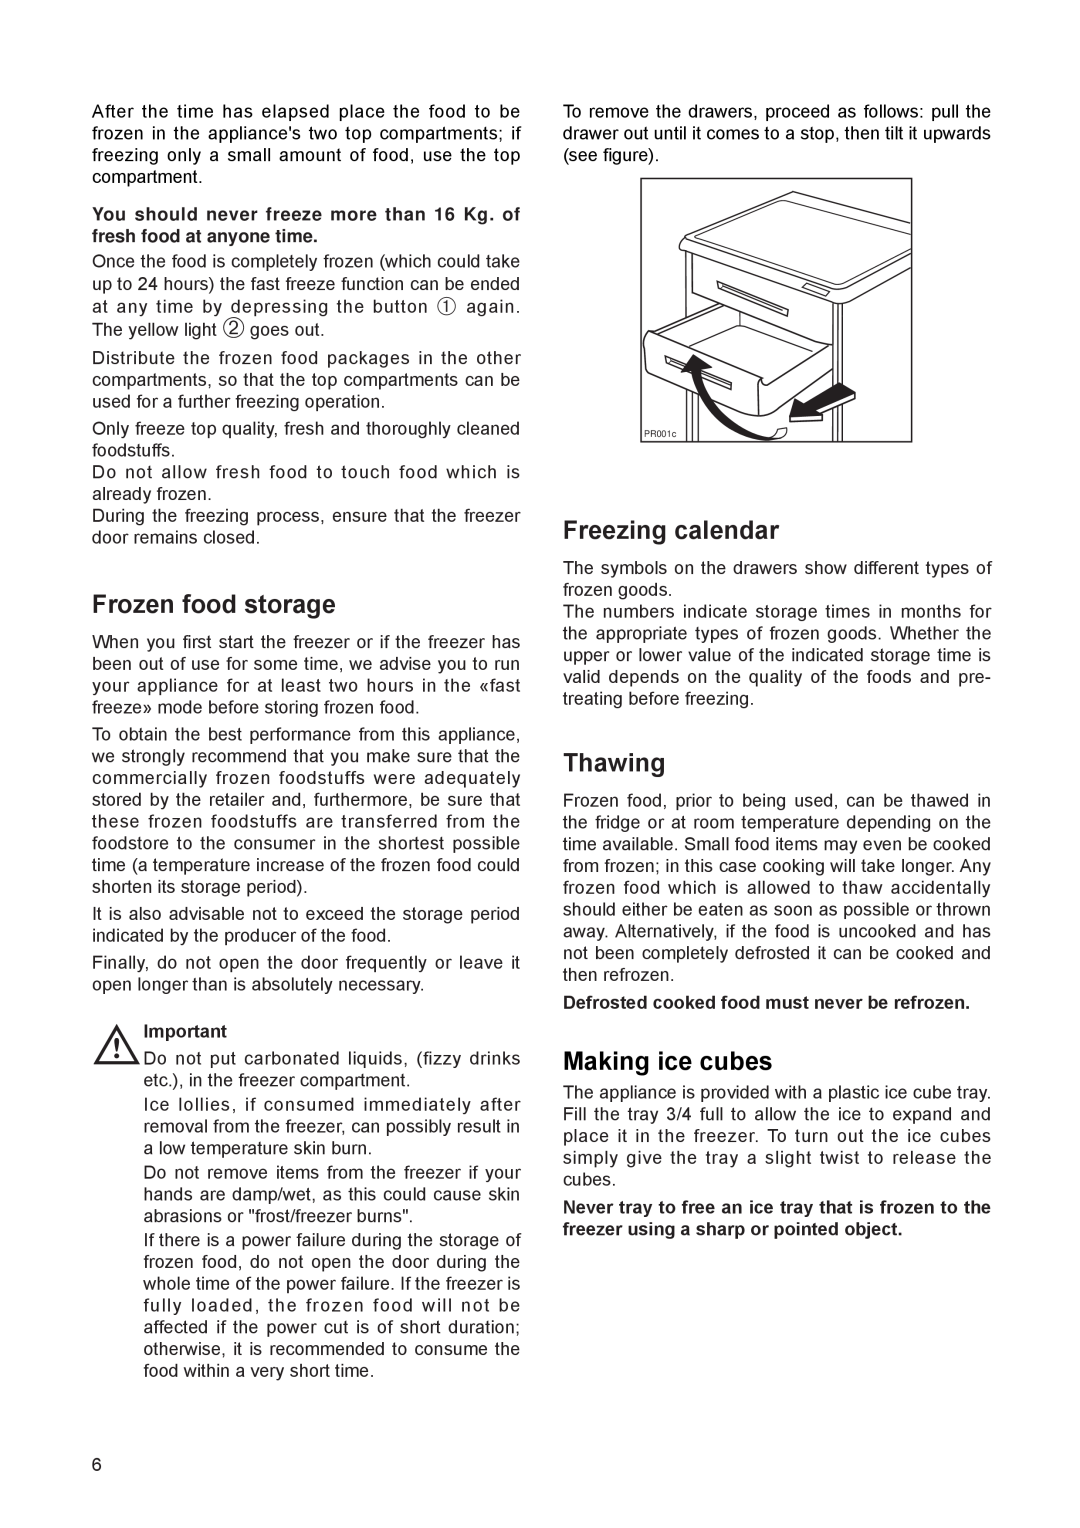 Electrolux EUN 1272 manual Frozen food storage, Freezing calendar, Thawing, Making ice cubes 